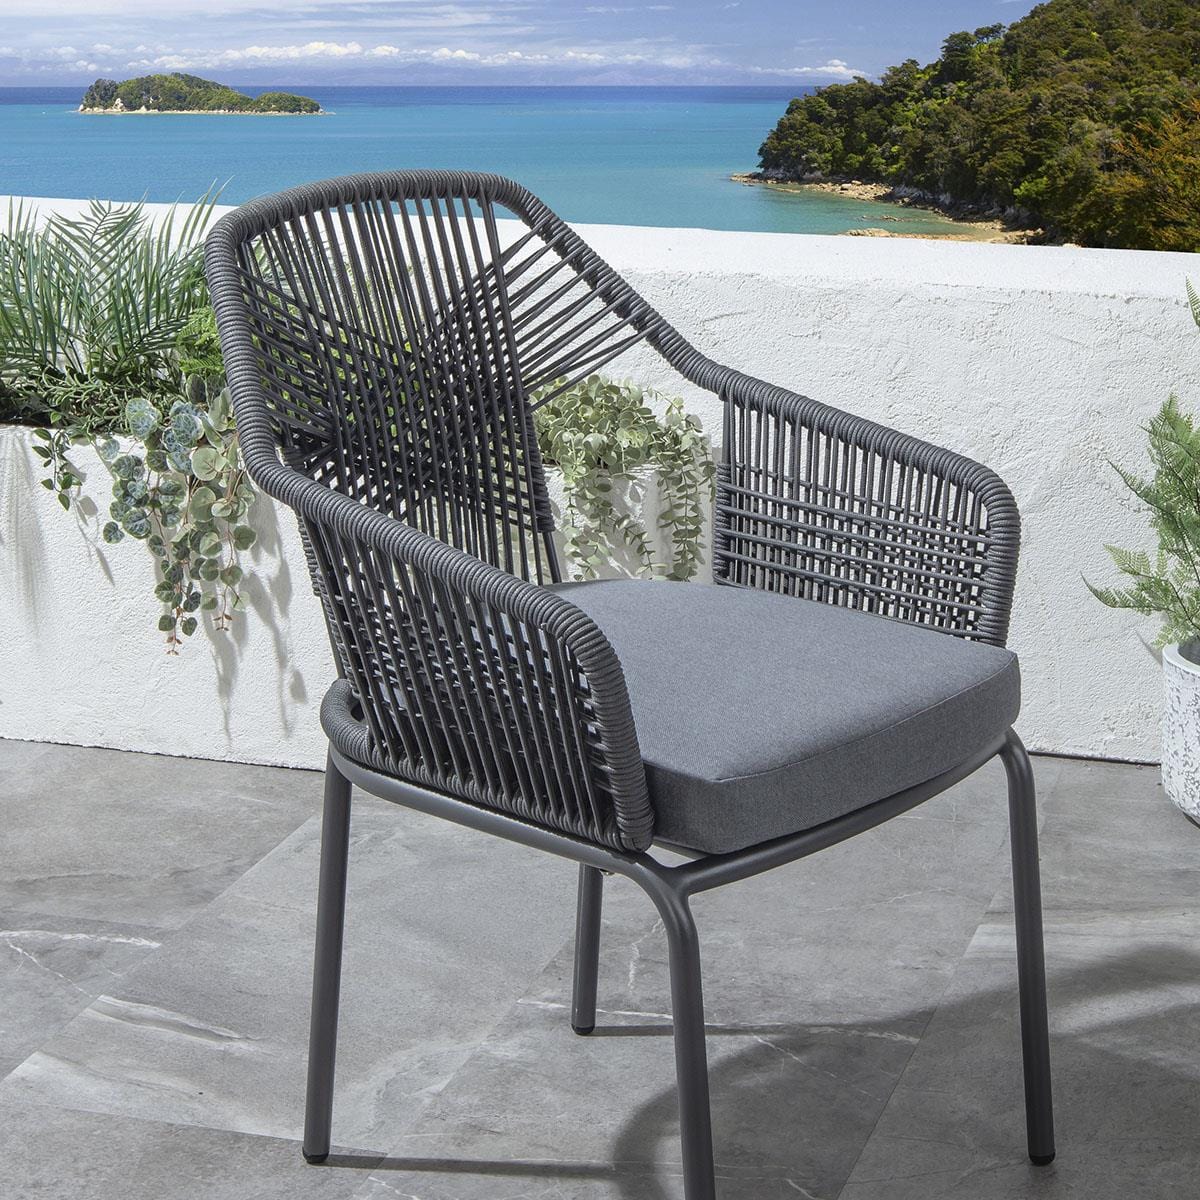 Quatropi 4 Cia Outdoor Garden Dining Chairs Grey